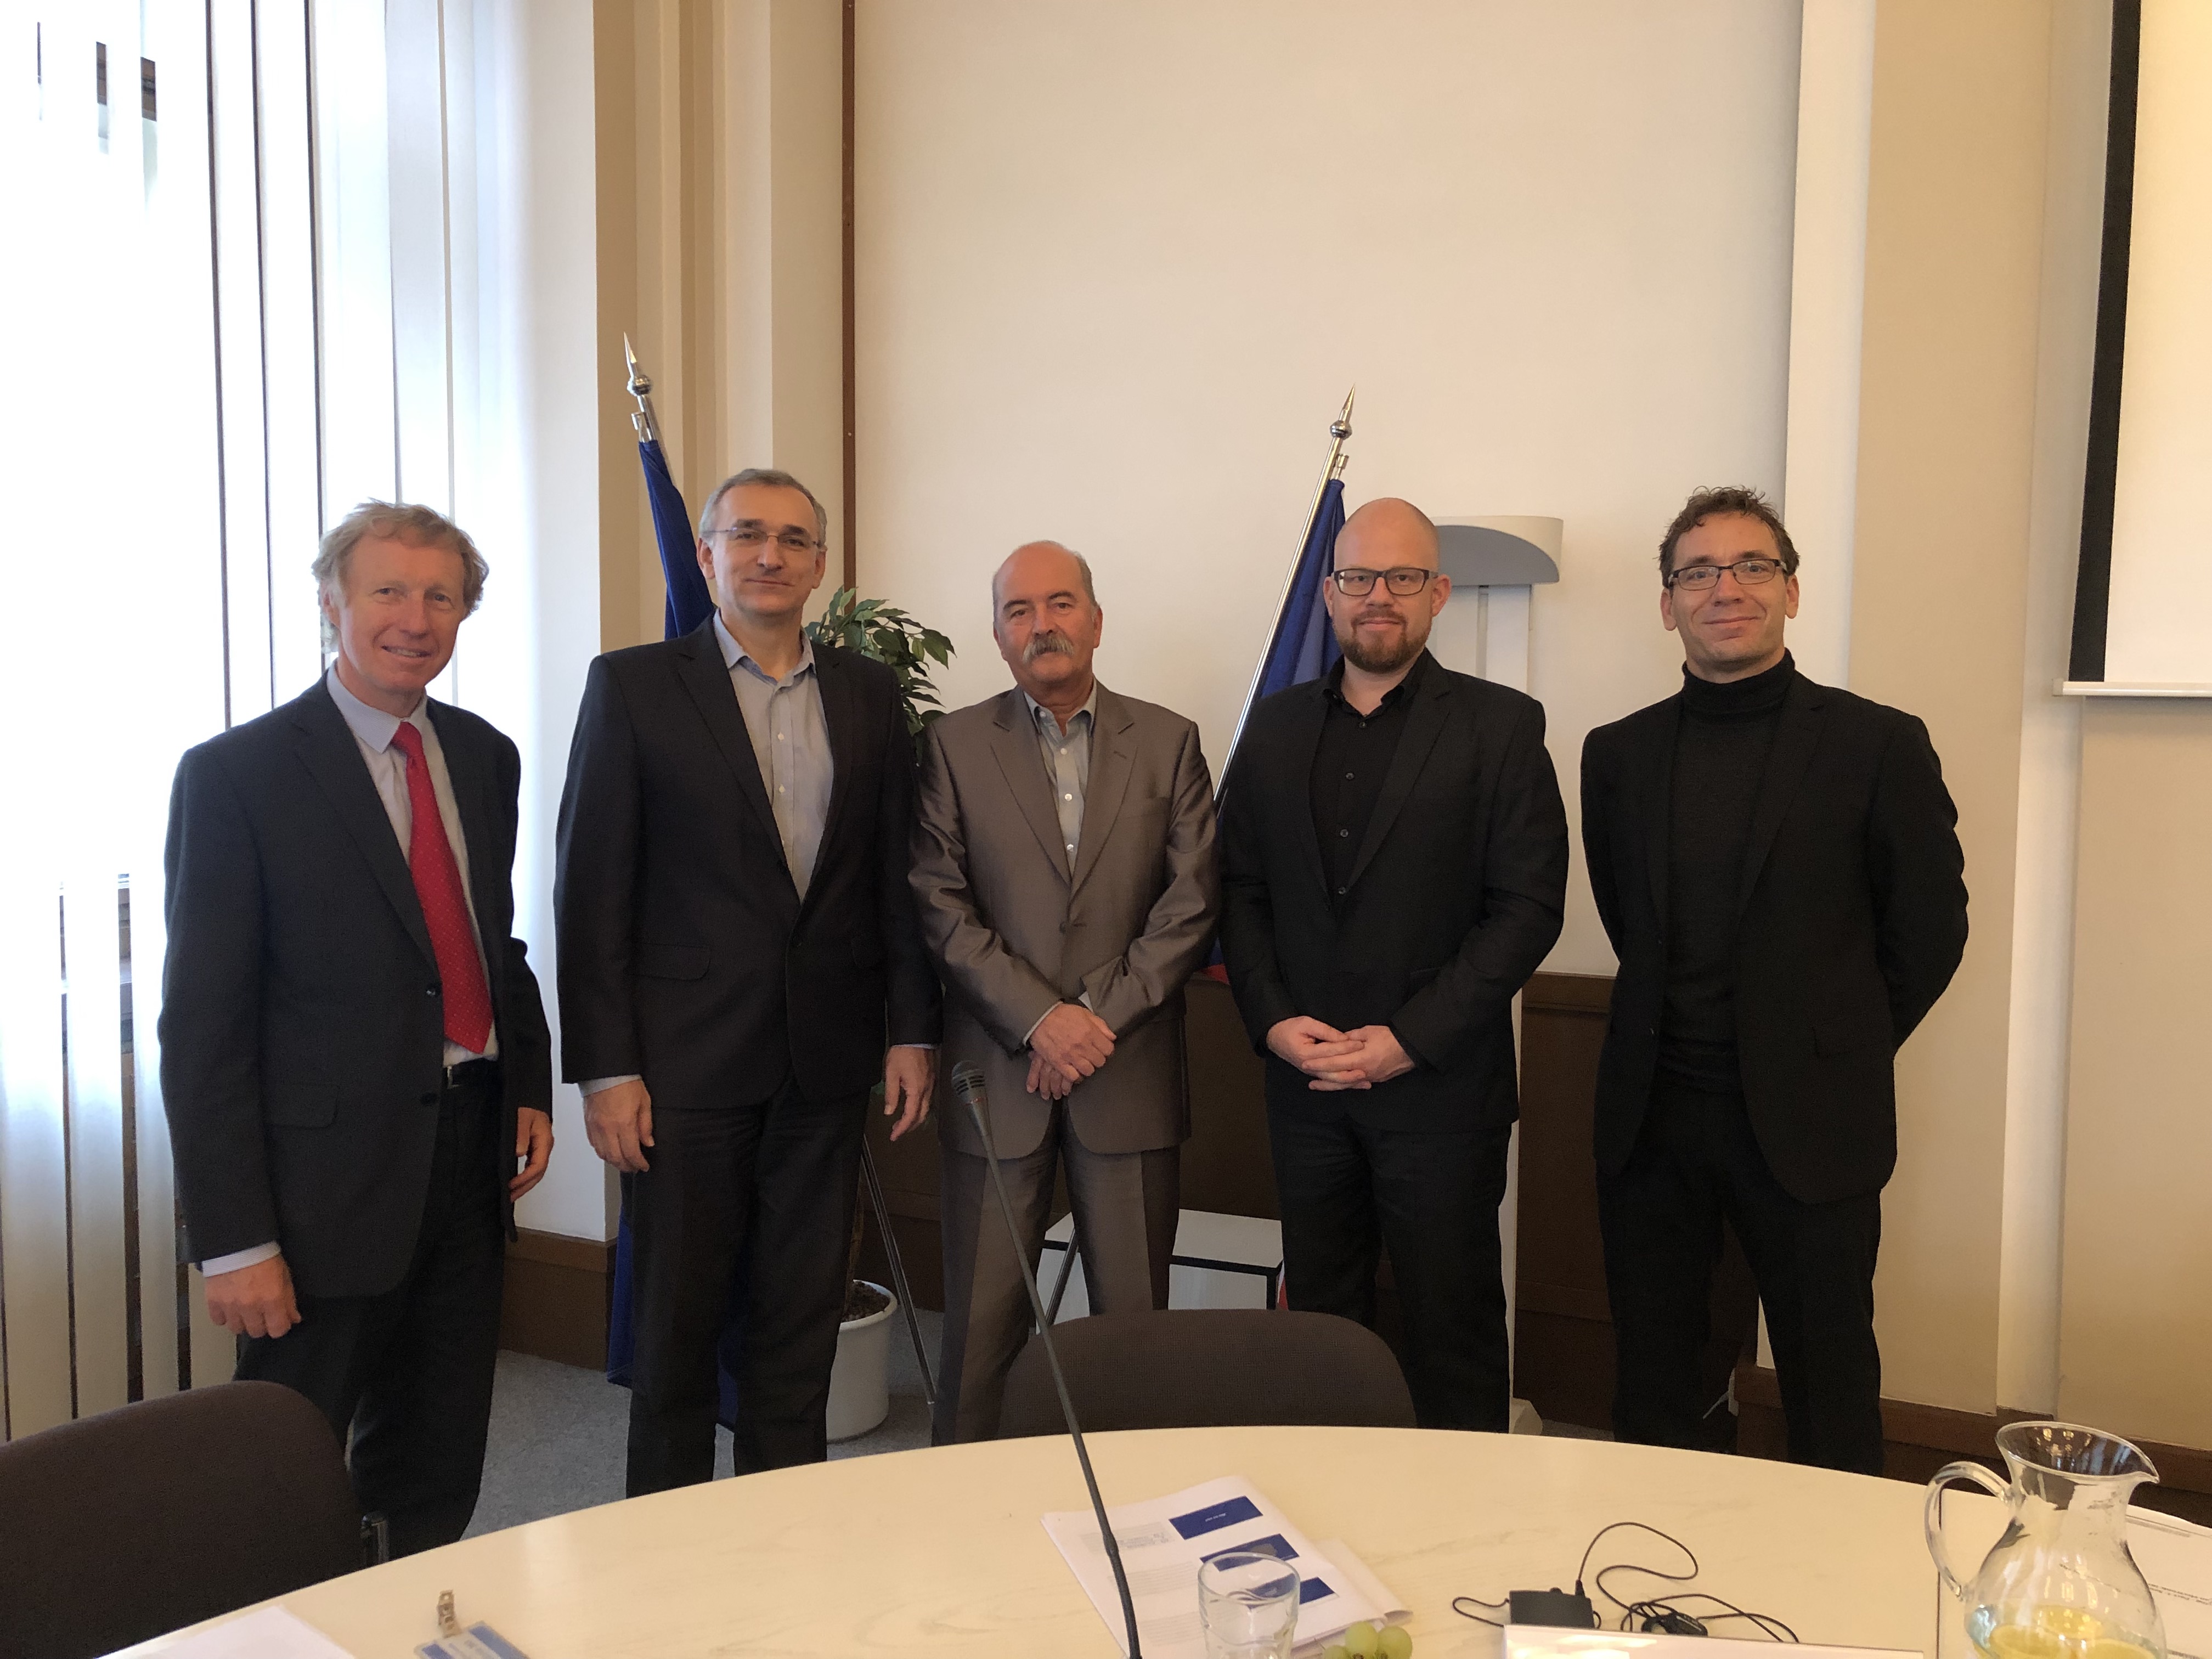 Mr Jiri Svoboda, Mr Petr Kuchar, Mr Christian Vindinge Rasmussen, Mr Martin Forsberg